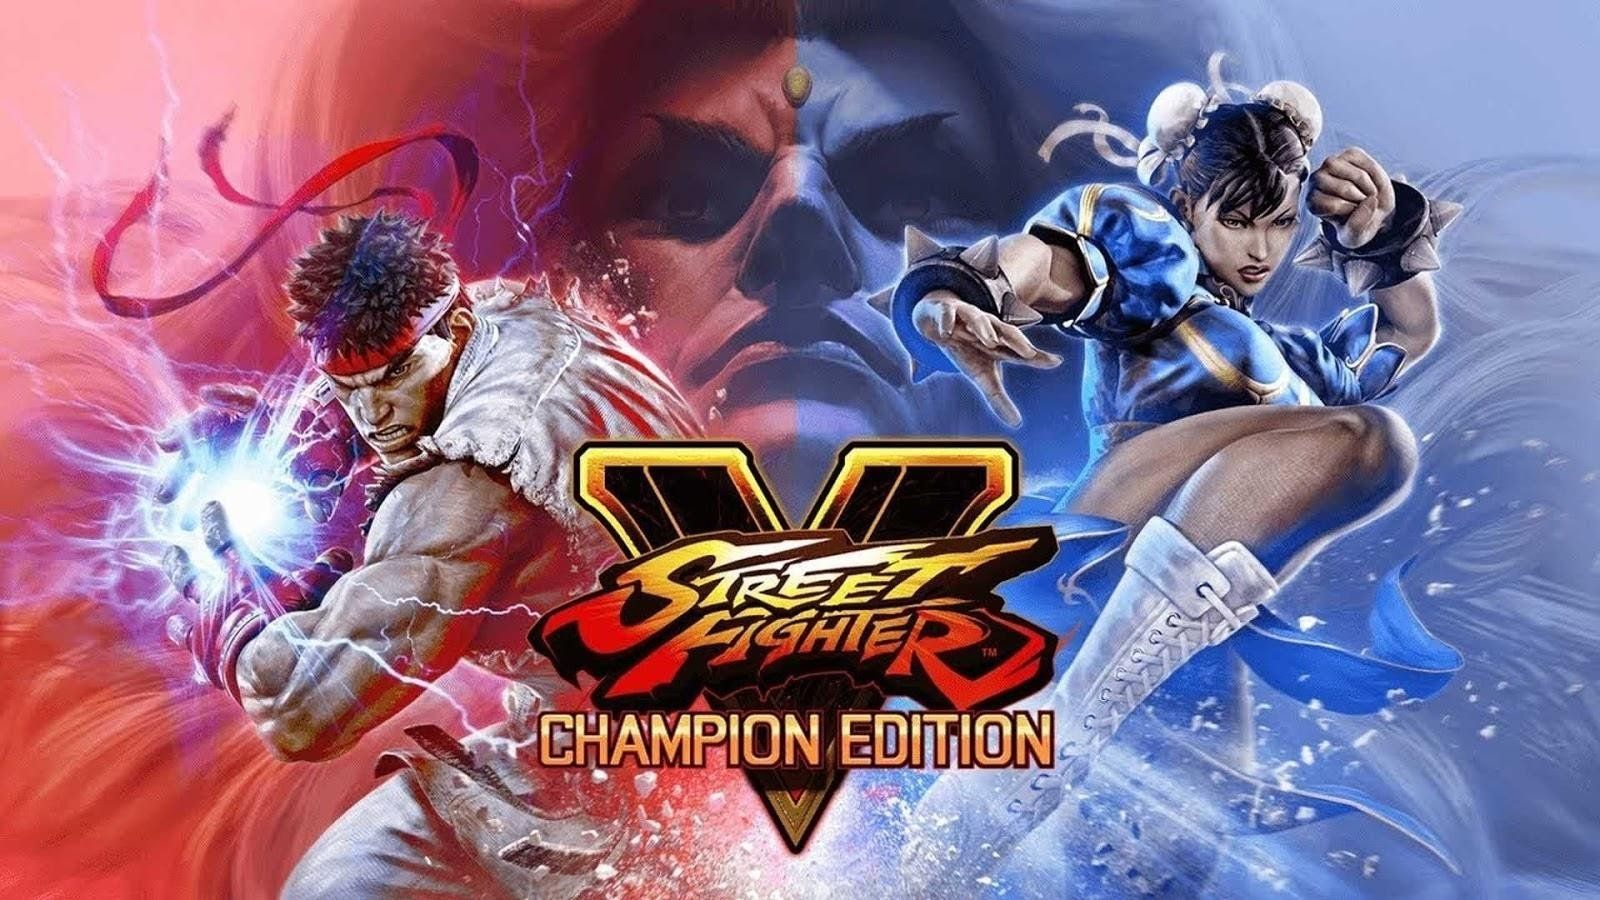 Street Fighter 5 mùa cuối sẽ bổ sung 4 sàn đấu và 5 đấu sĩ mới, trong đó có một người bí ẩn